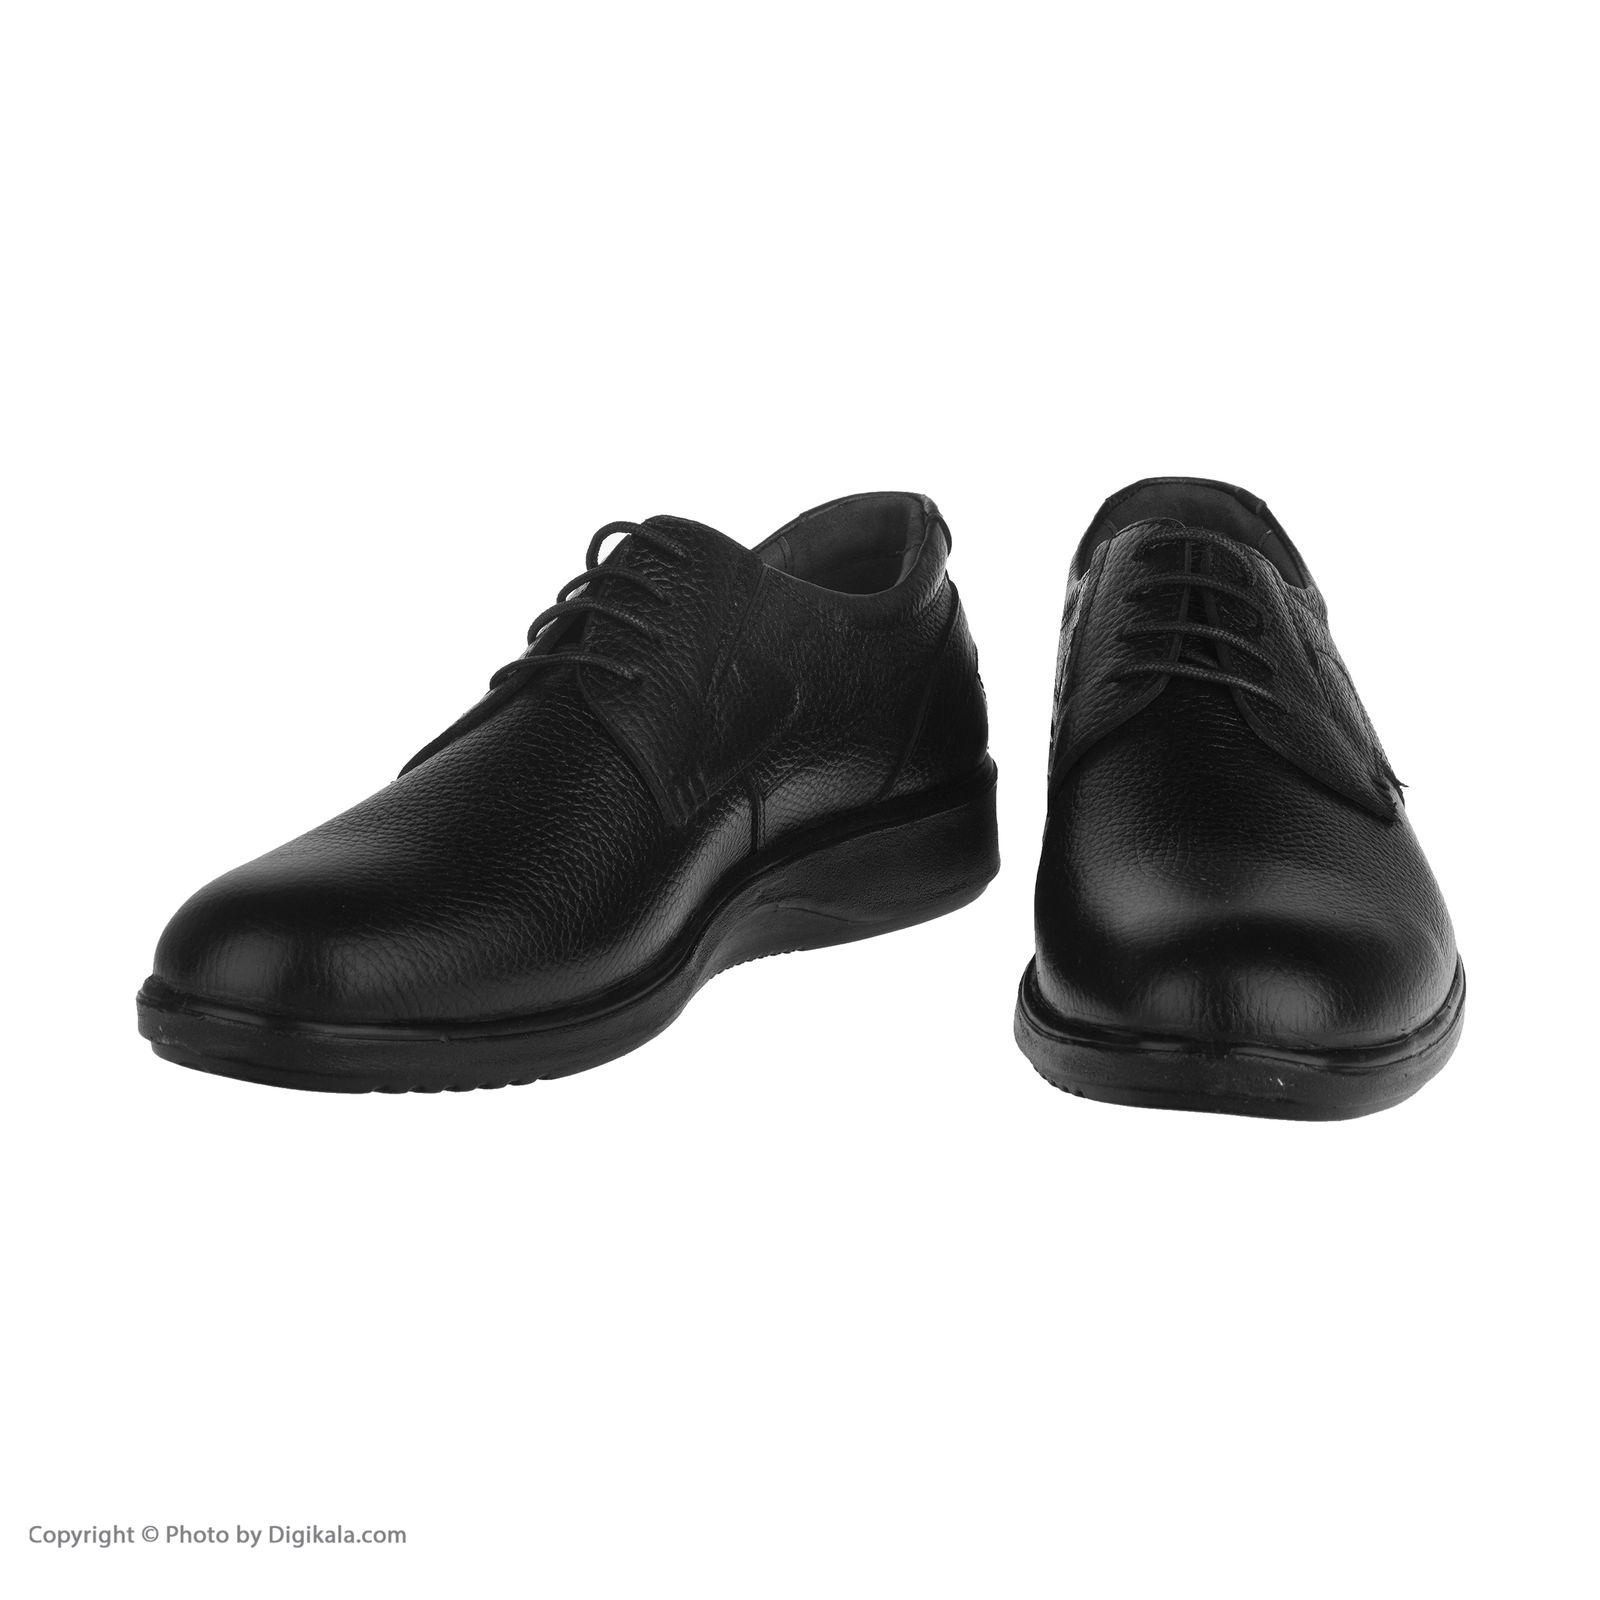  کفش روزمره مردانه ساتین مدل 7249b503101 -  - 6